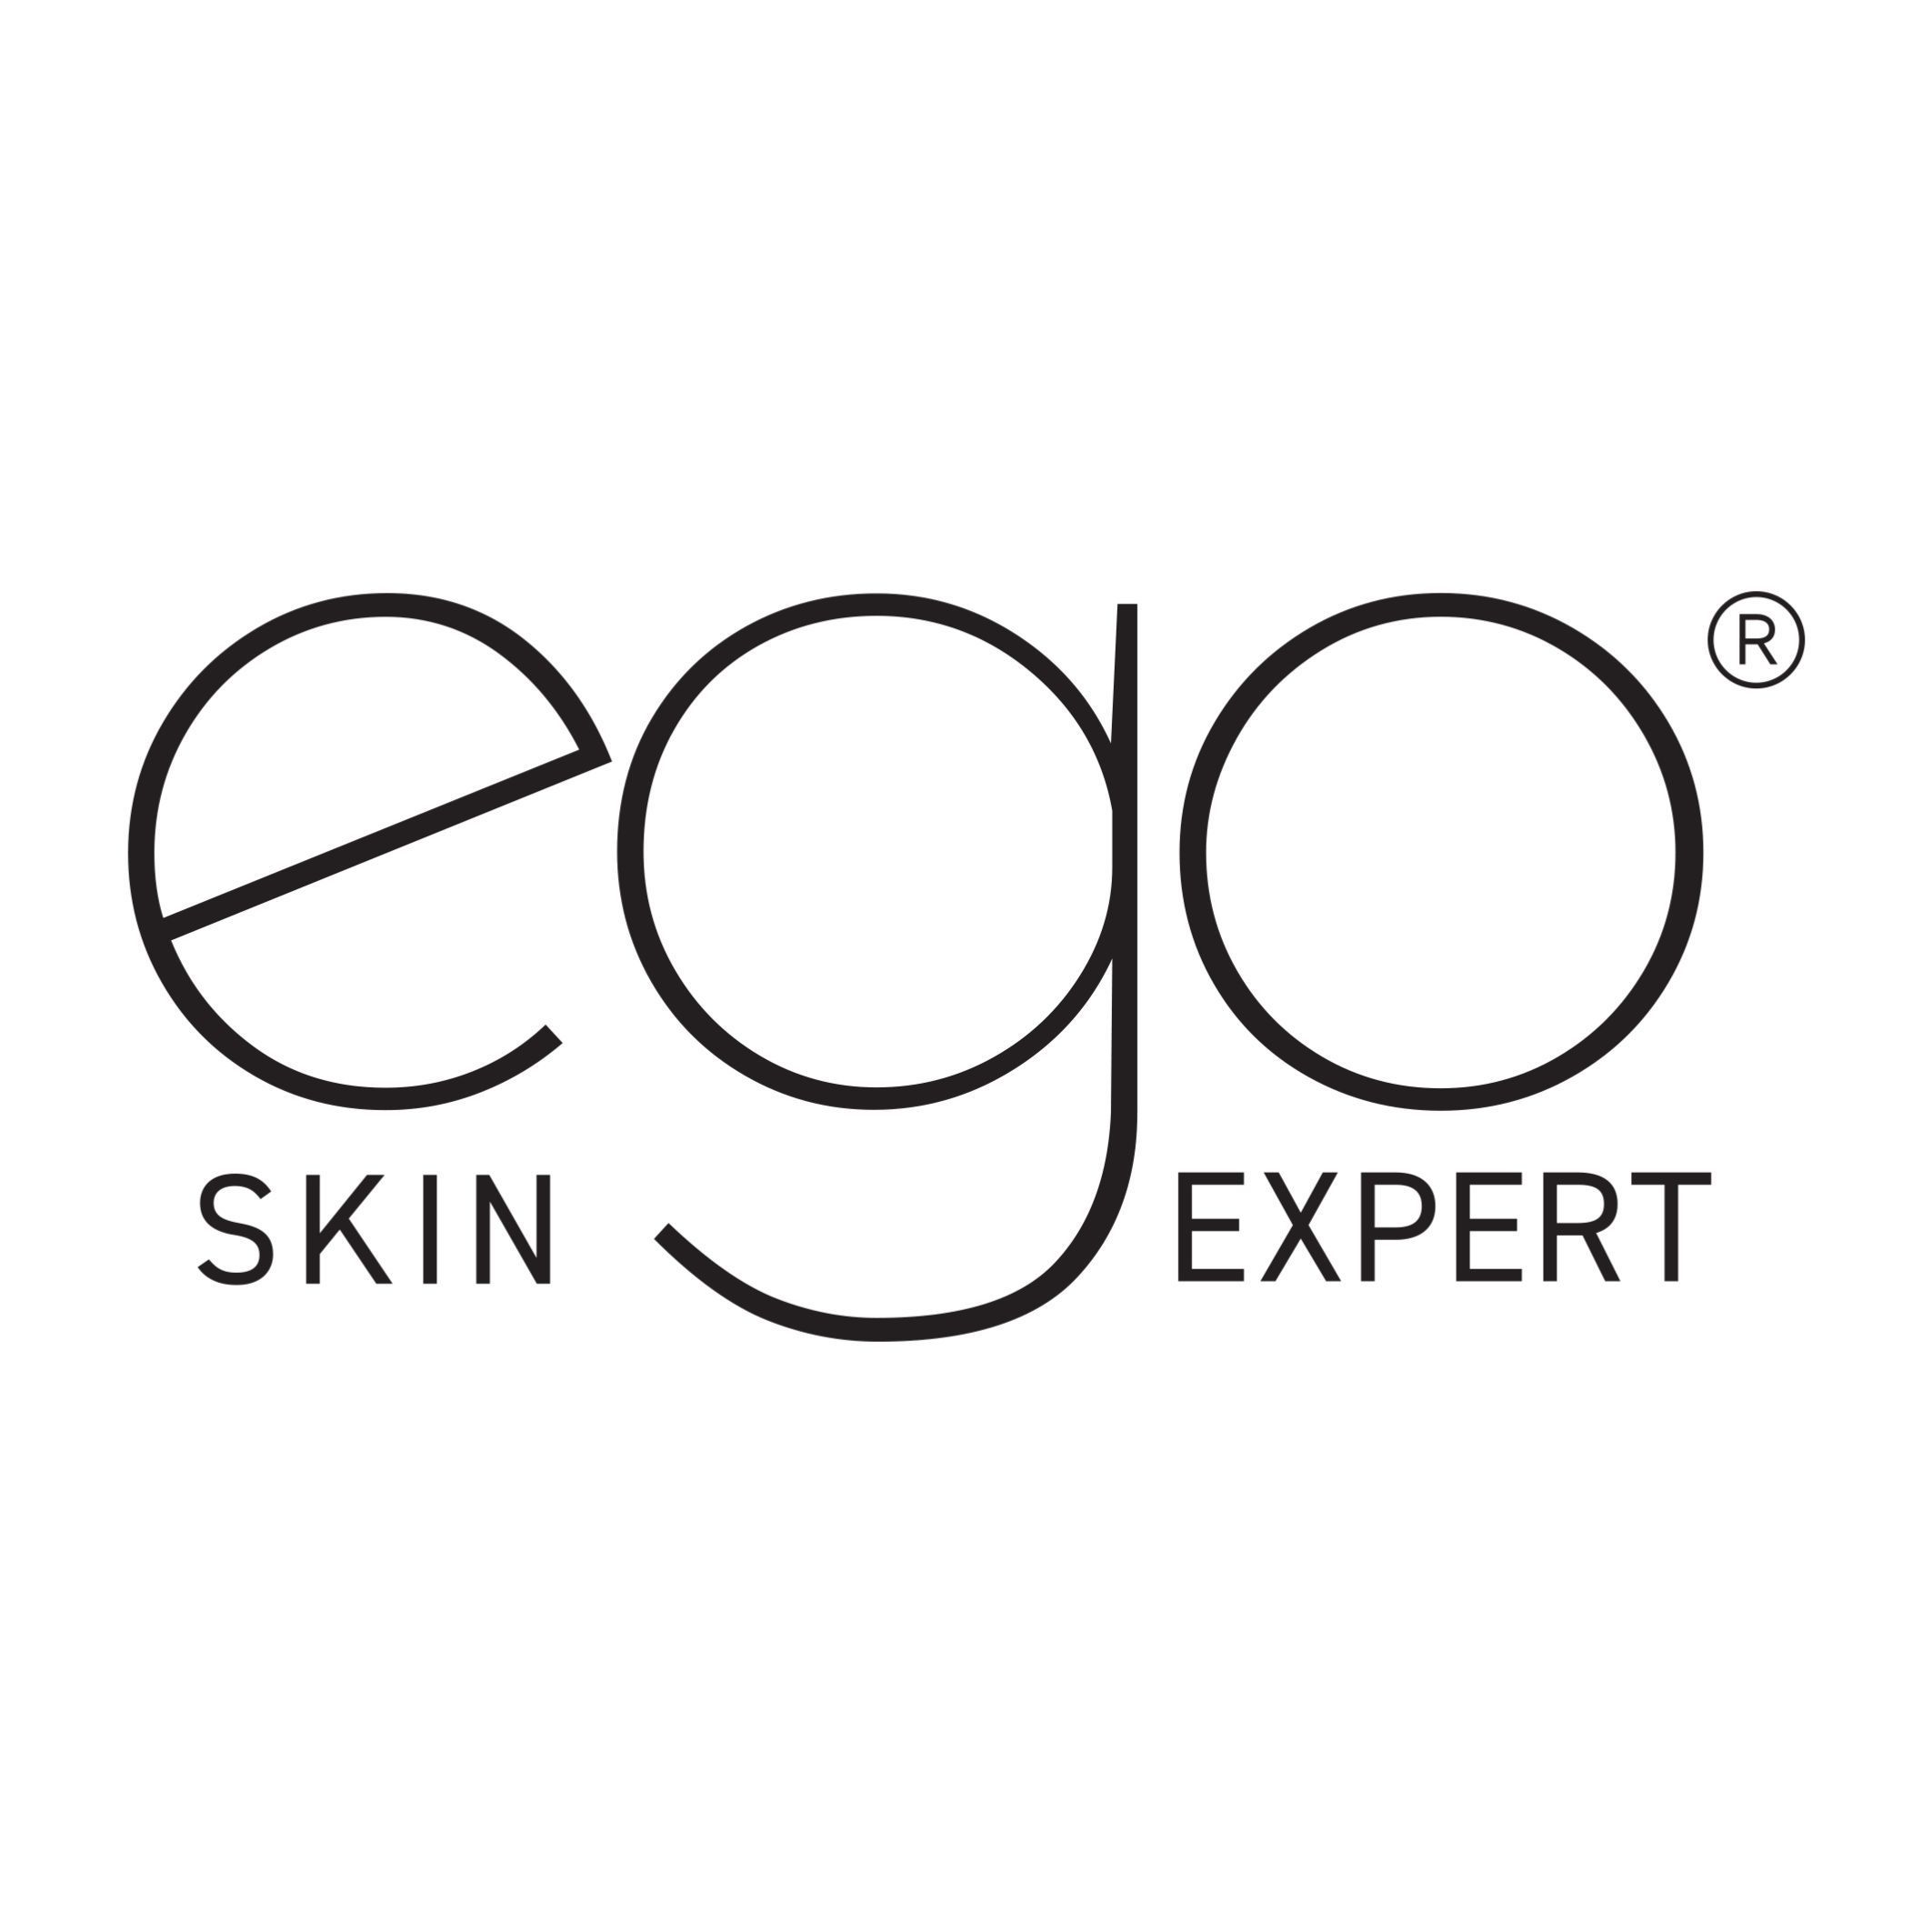 EGO Skin Expert Elżbieta Galarowska-Olaś, ulica Ignacego Krasickiego 12, 30-503, Kraków, Podgórze